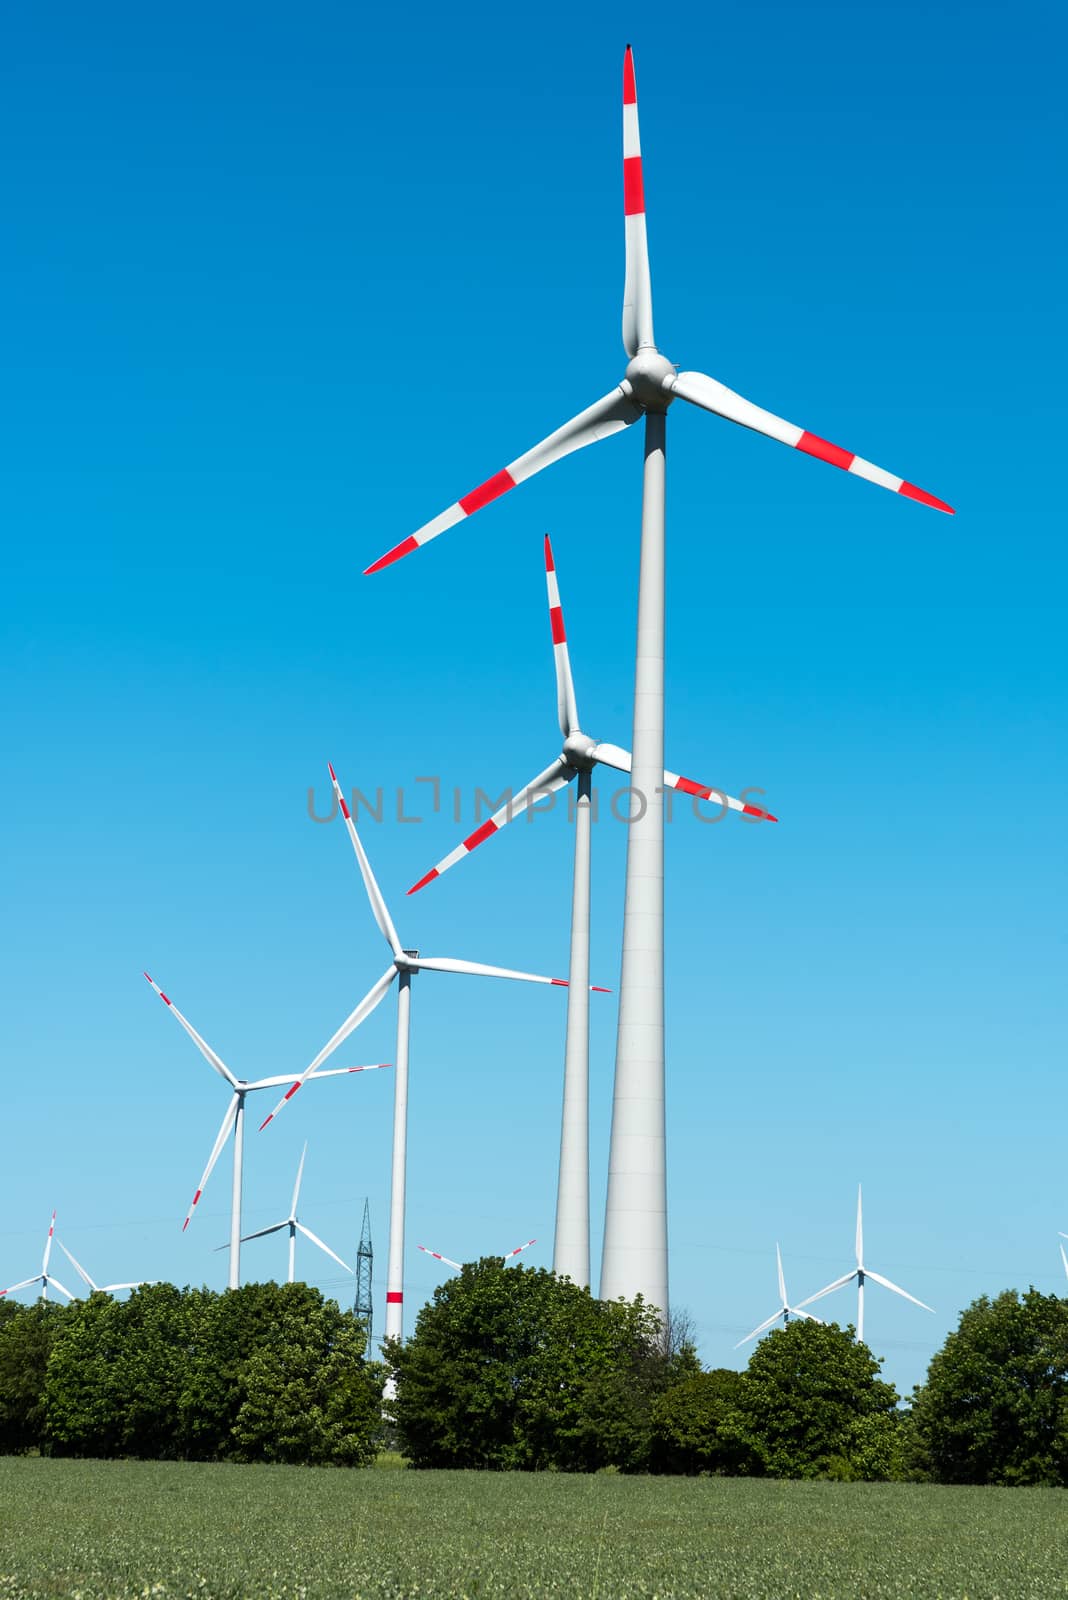 Wind energy plant in Germany by elxeneize